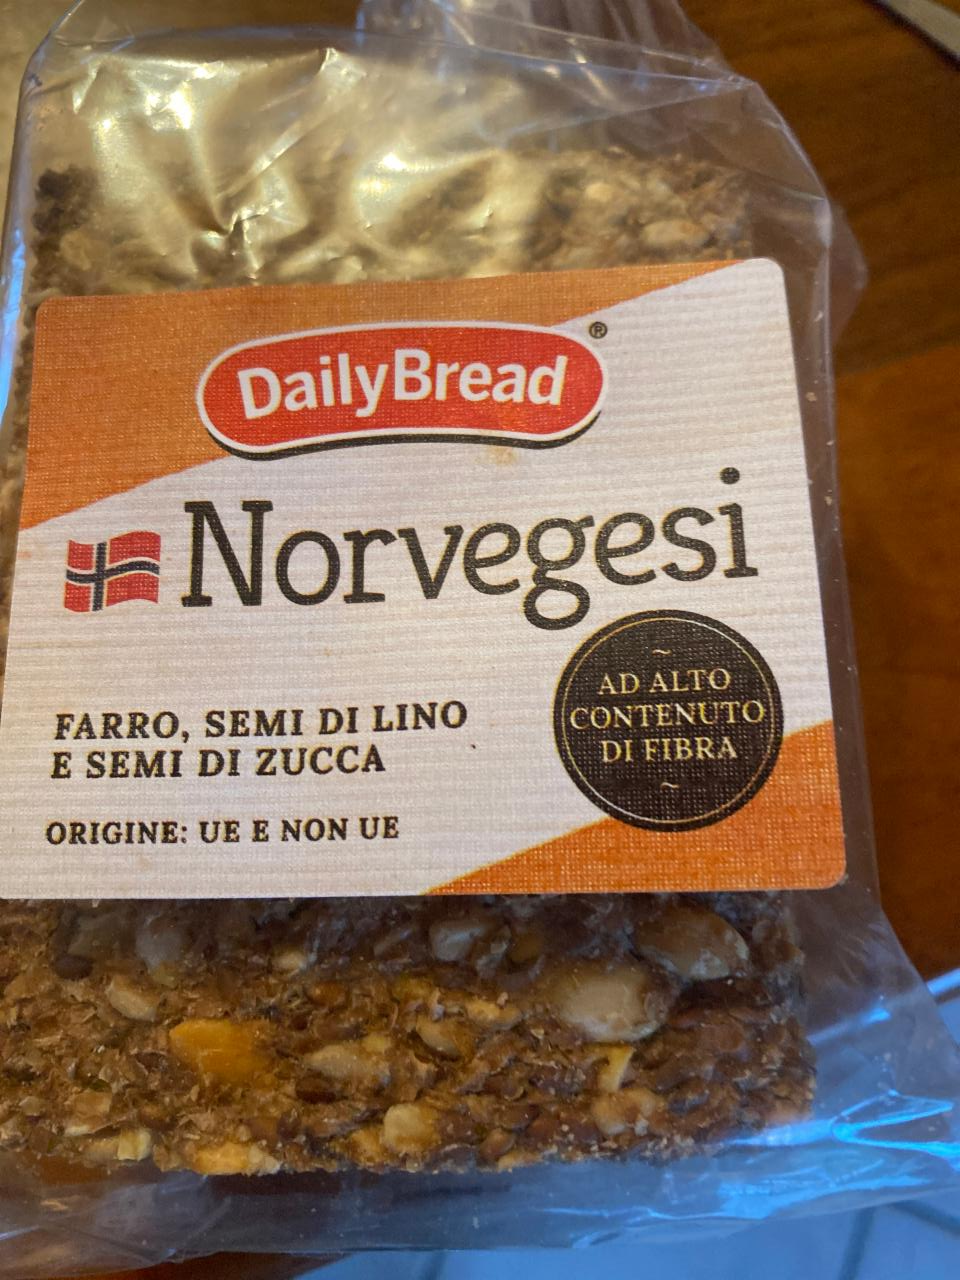 Фото - галеты с семенами норвежские Daily Bread